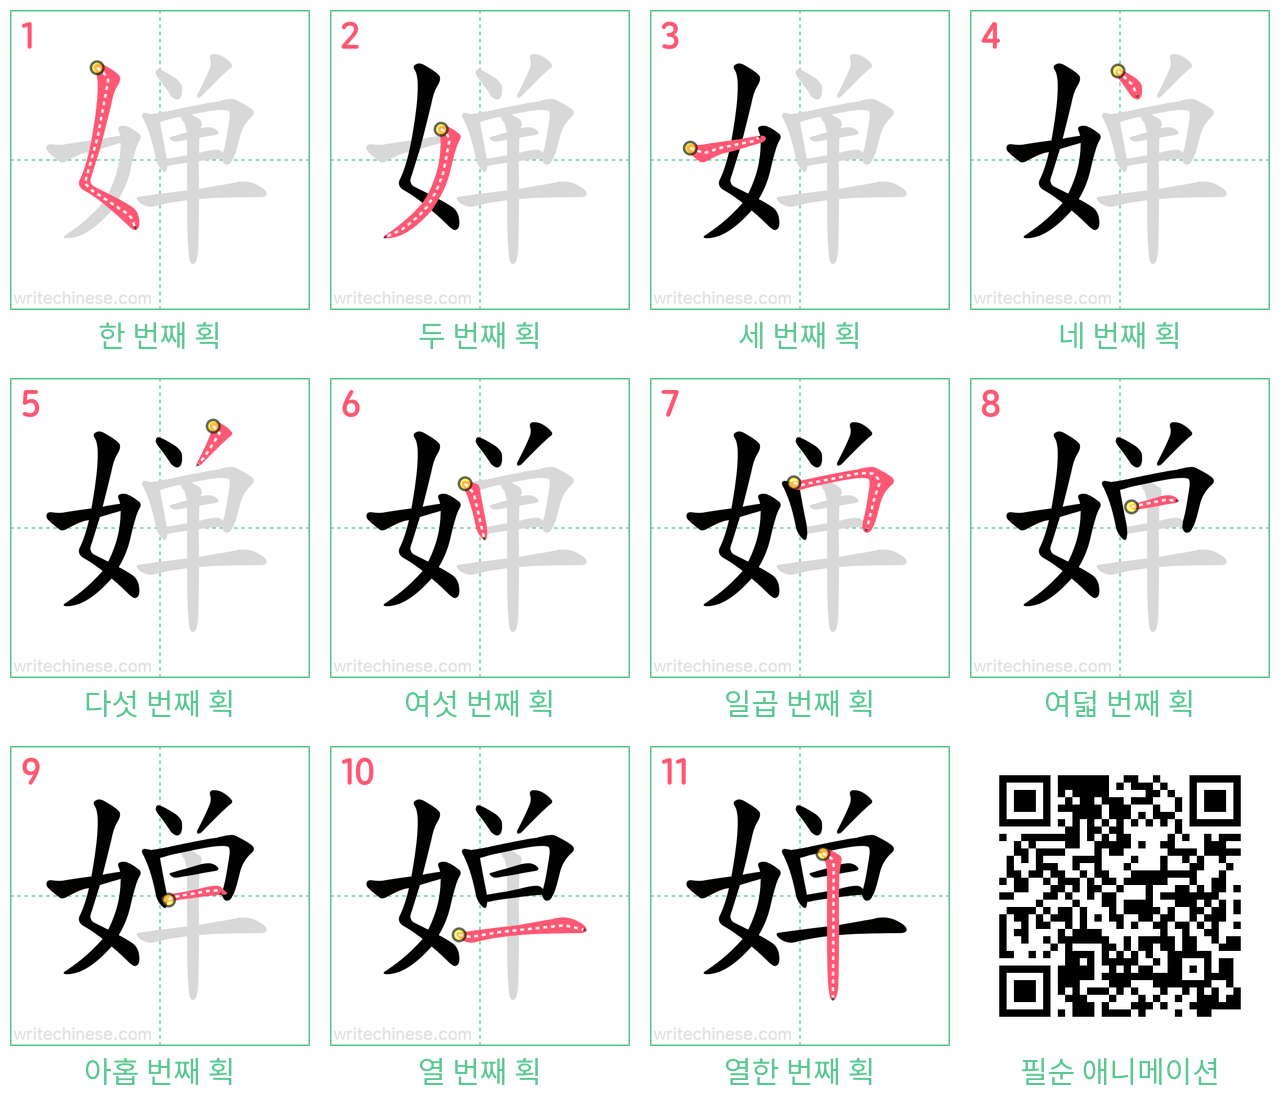 婵 step-by-step stroke order diagrams